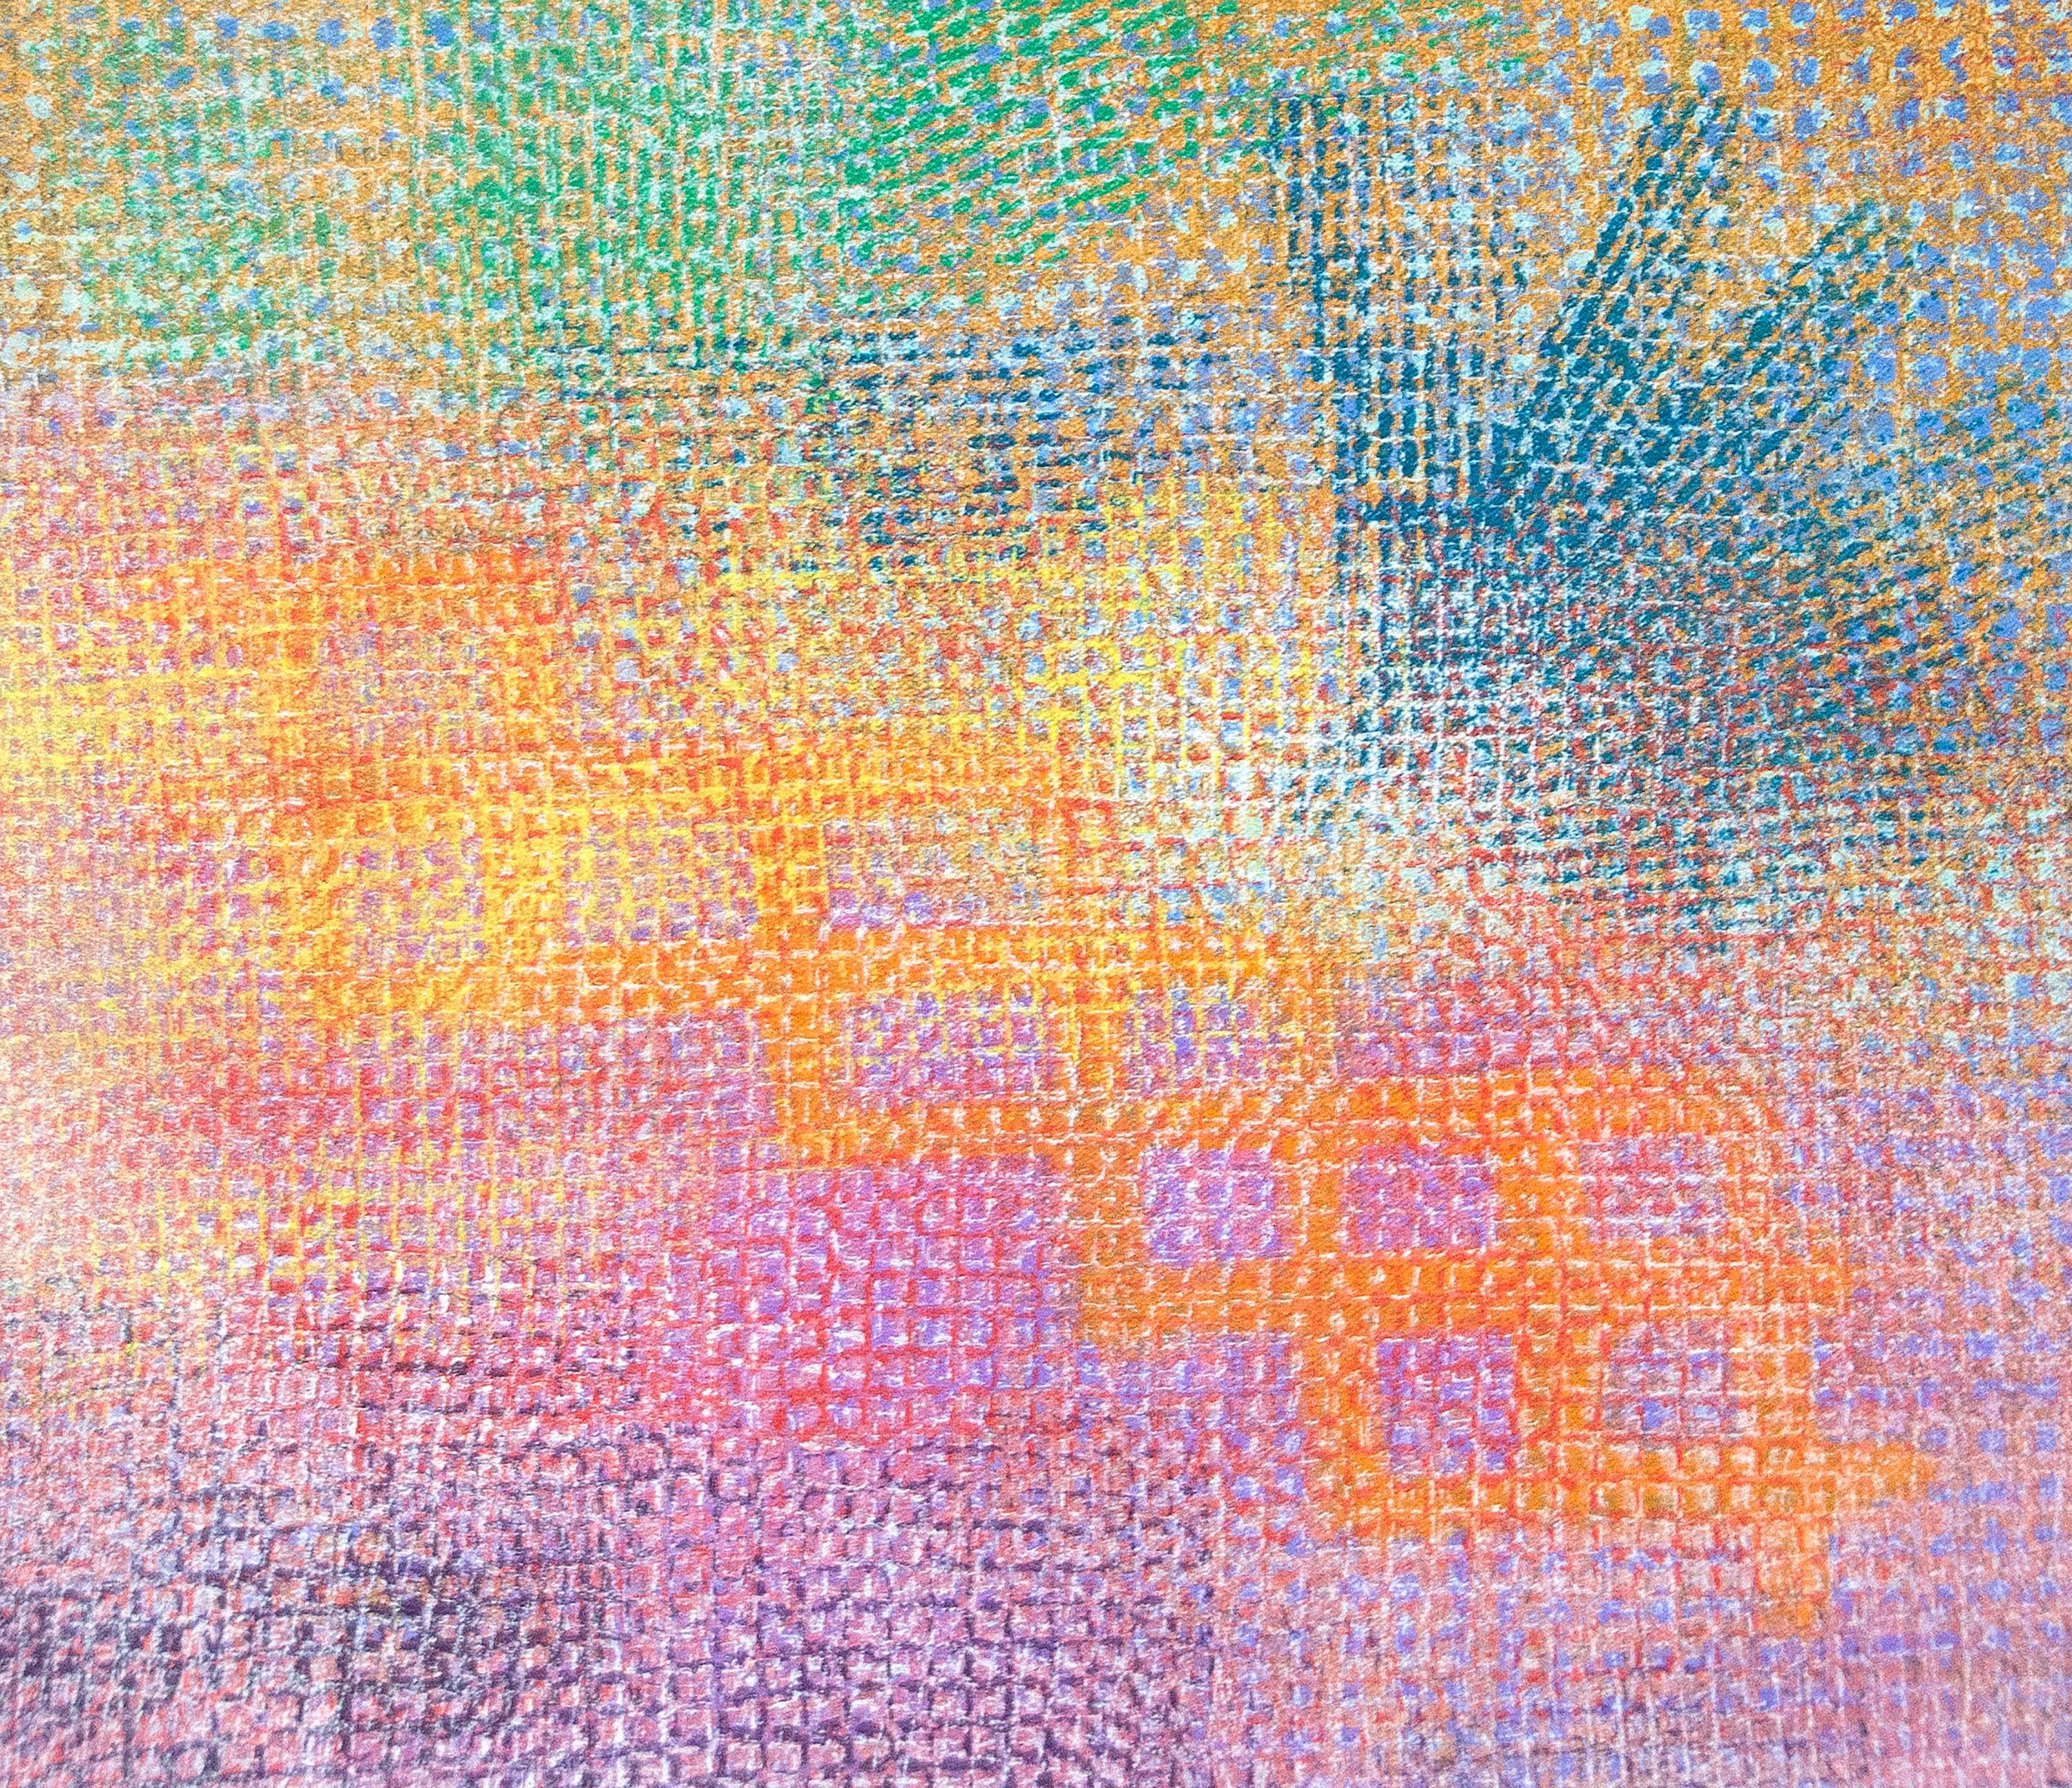 Ein Gemälde in Acryl auf Leinwand des Nachkriegskünstlers Robert Natkin. Dieses abstrakte Gemälde ohne Titel ist in dünnen Schichten aus violetter, orangefarbener, gelber, blaugrüner, ockerfarbener und grüner Acrylfarbe ausgeführt. Signiert unten